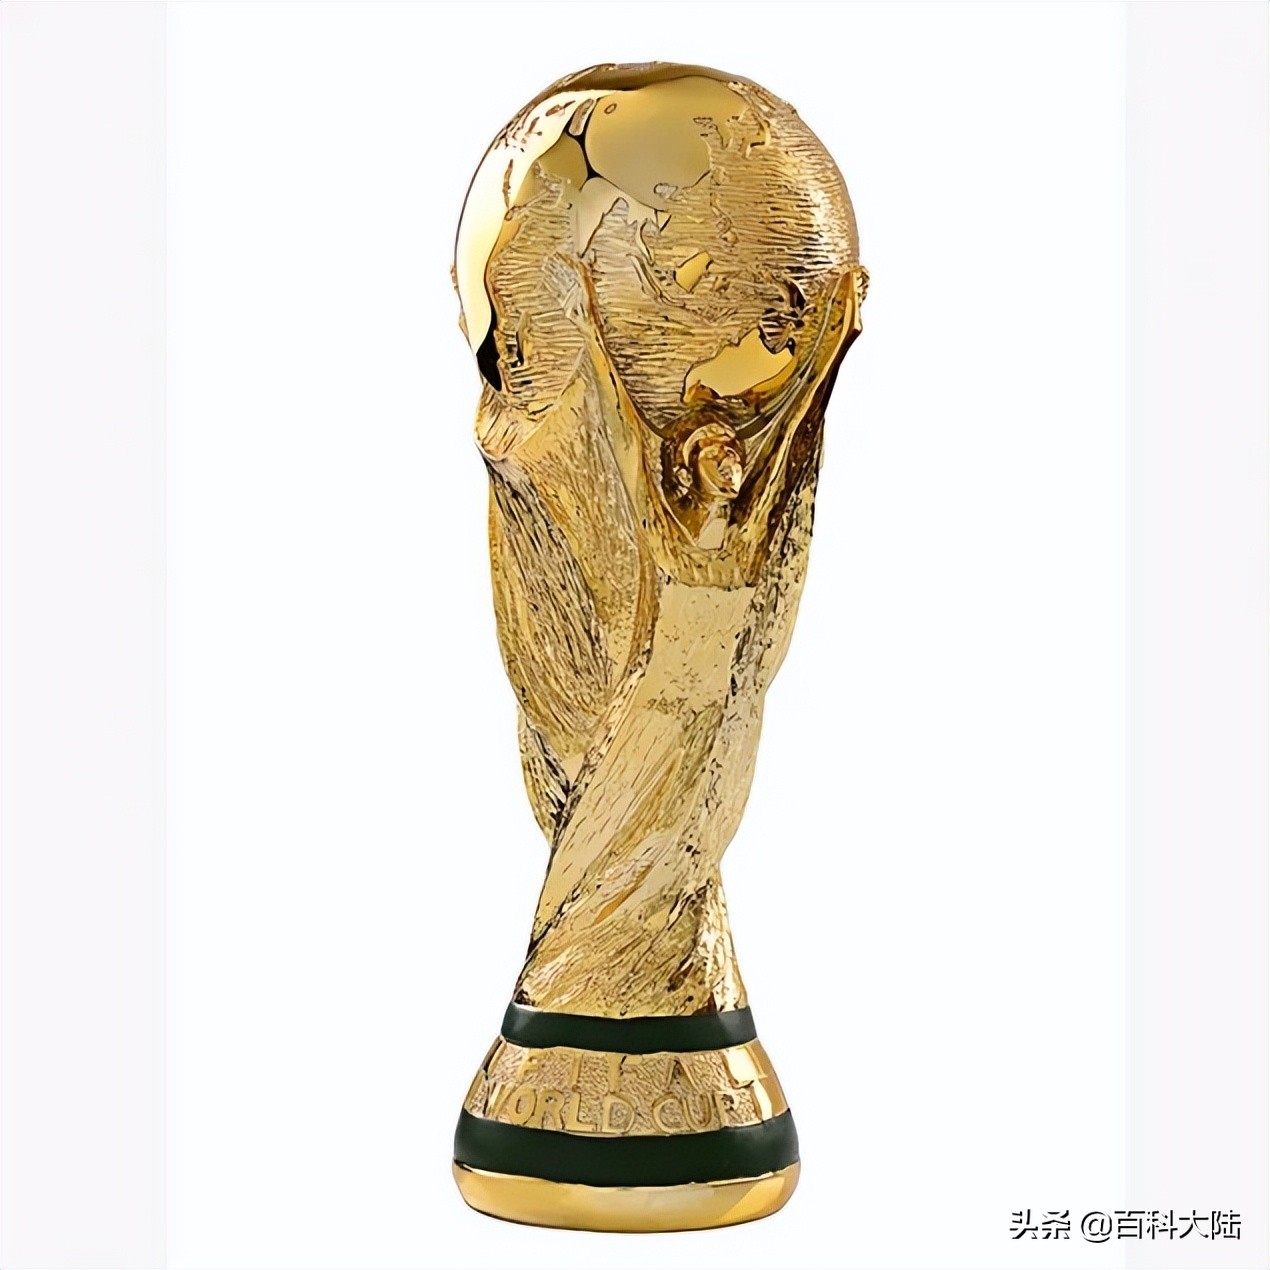 2022世界杯开赛在即，盘点近六届亚洲球队的世界杯旅程